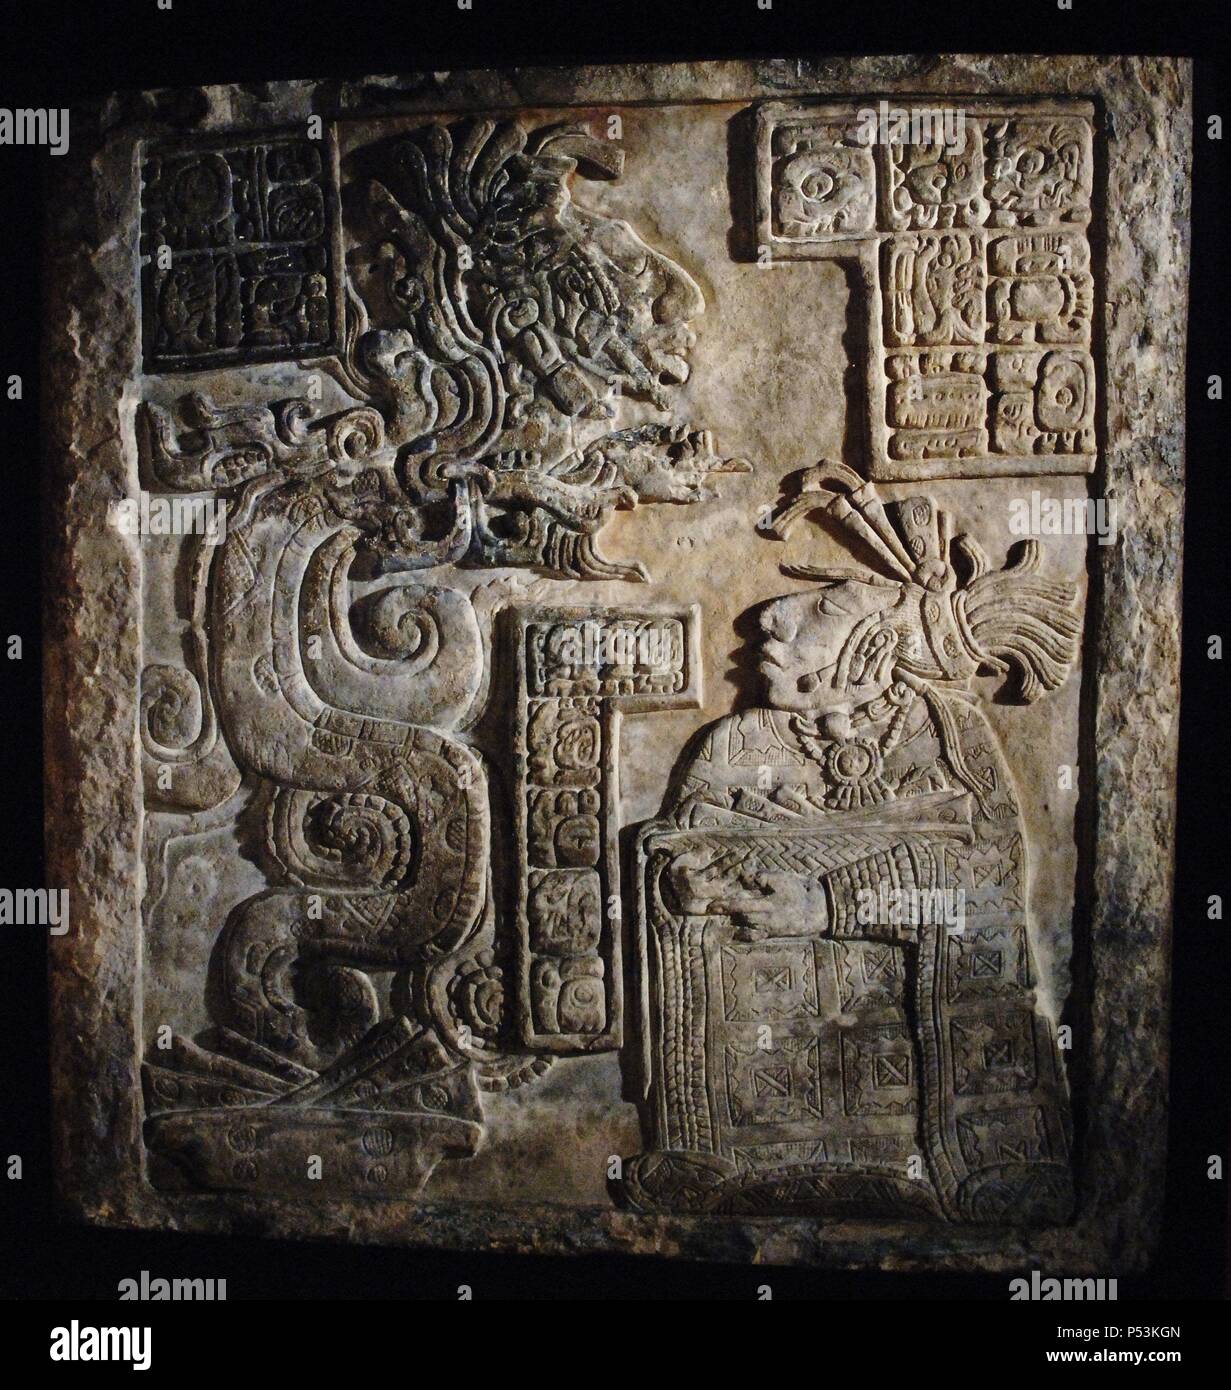 ARTE MAYA. PERIODO CLASICO TARDIO (600-900 d. C.). DINTEL 15 DE YAXCHILAN (770-775 d. C.). Relieve en piedra caliza que representa a la ESPOSA DEL REY PAJARO JAGUAR IV (752-768), WAK TUUN, HACIENDO UN AUTOSACRIFICIO DE SANGRE ANTE LA SERPIENTE VISION QUE SURGE DE UN ROLLO DE PAPEL MANCHADO CON LA SANGRE DE LA DAMA. DE SU BOCA SALE UN ANCESTRO CON EL QUE LA DAMA QUIERE CONTACTAR. La pieza forma parte de una serie de tres relieves encargados por Pájaro Jaguar IV para decorar la ESTRUCTURA 21 en Yaxchilán. Estado de Chiapas. México. Museo Británico. Londres. Inglaterra. Reino Unido. Stock Photo